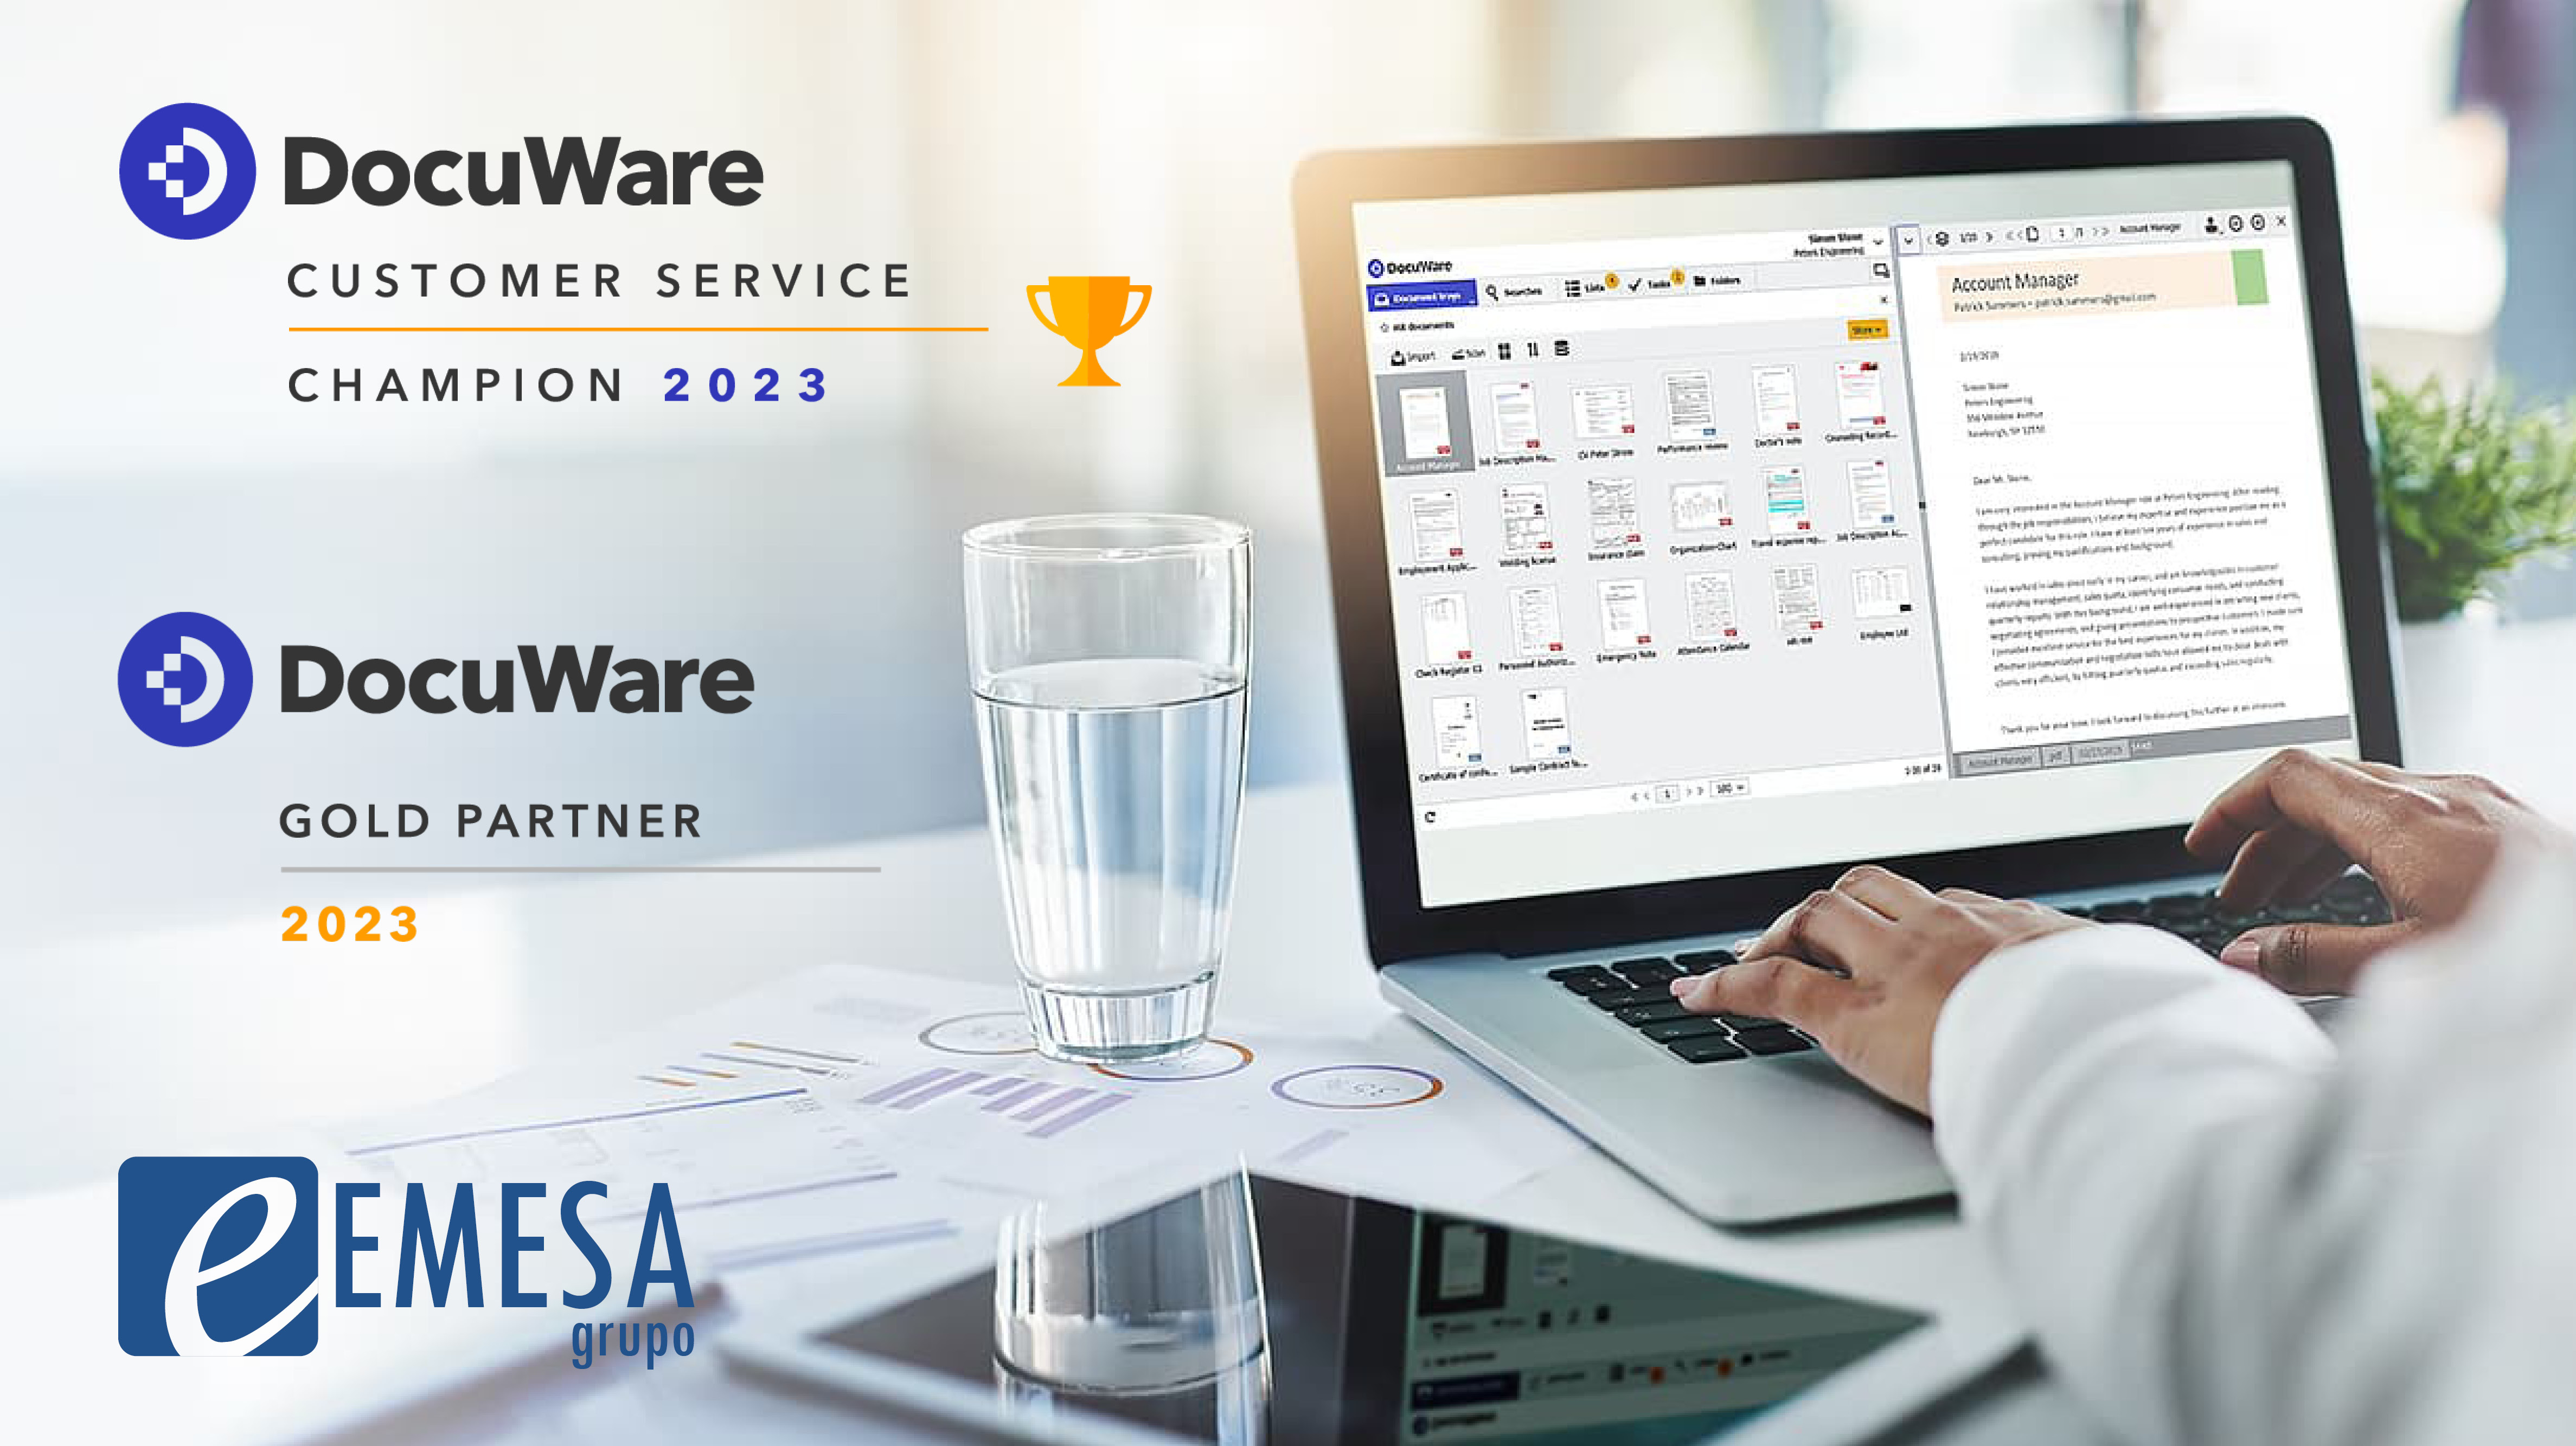 DocuWare concede  a EMESA el galardón de Customer Service Champion 2023